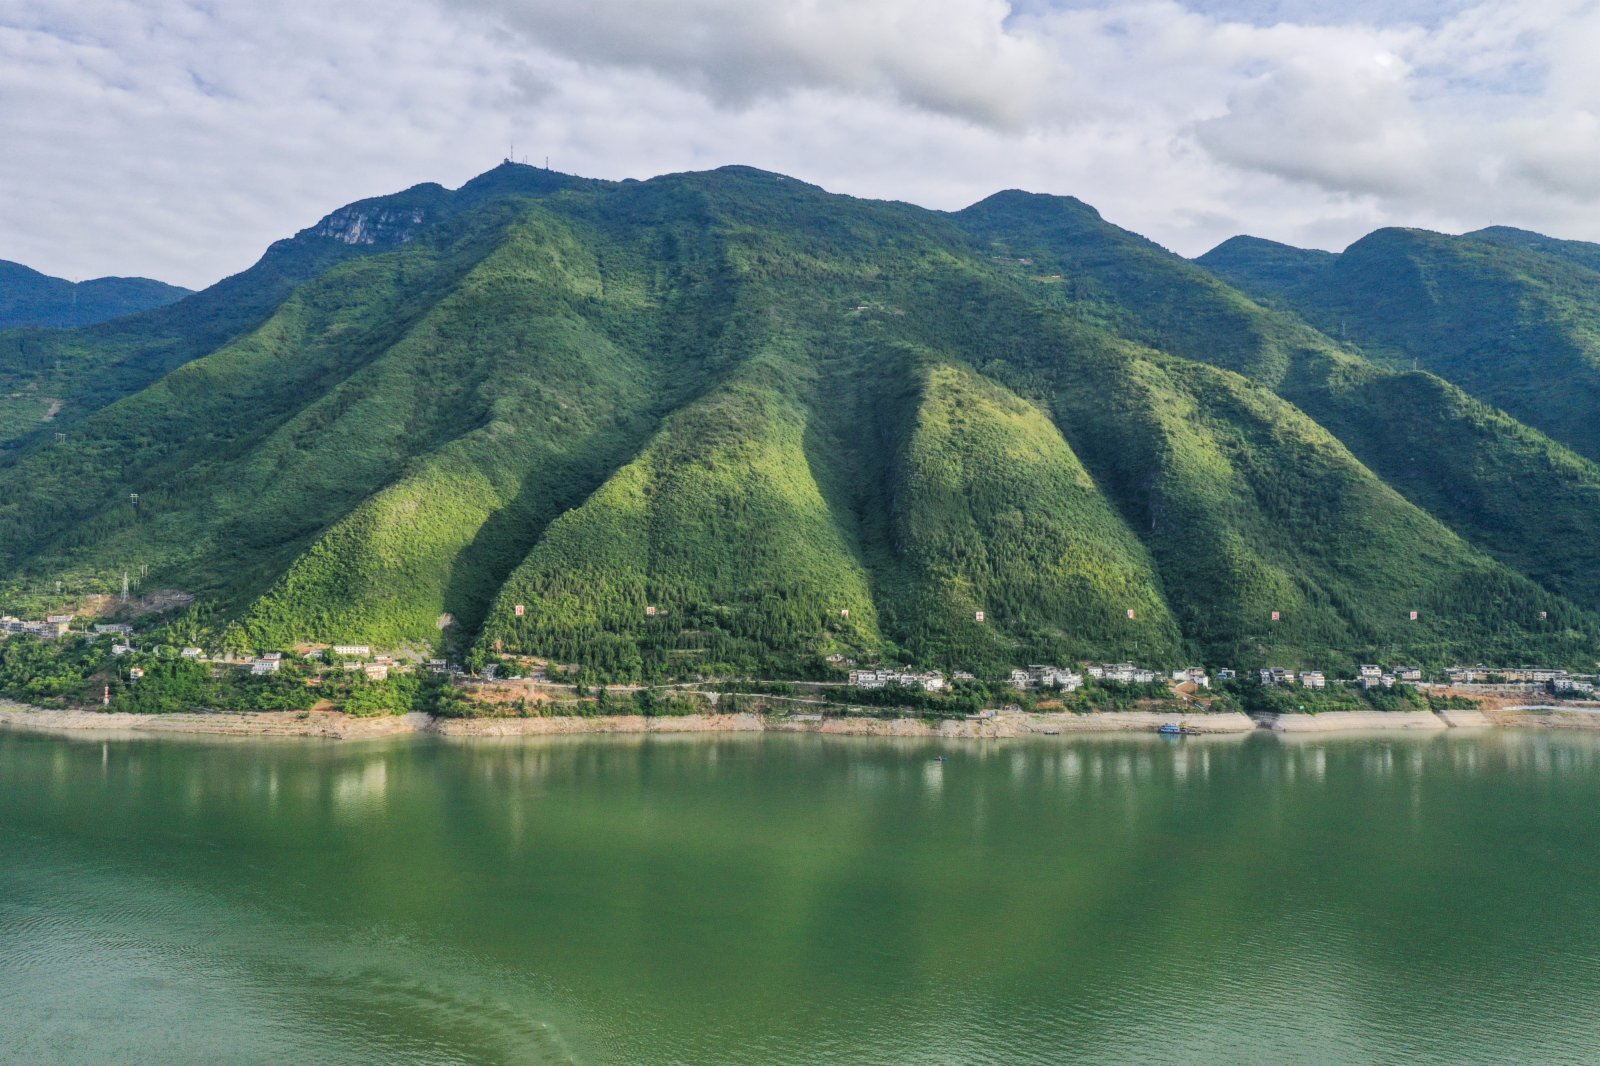 這是5月19日拍攝的長江巫山段景象（無人機照片）。